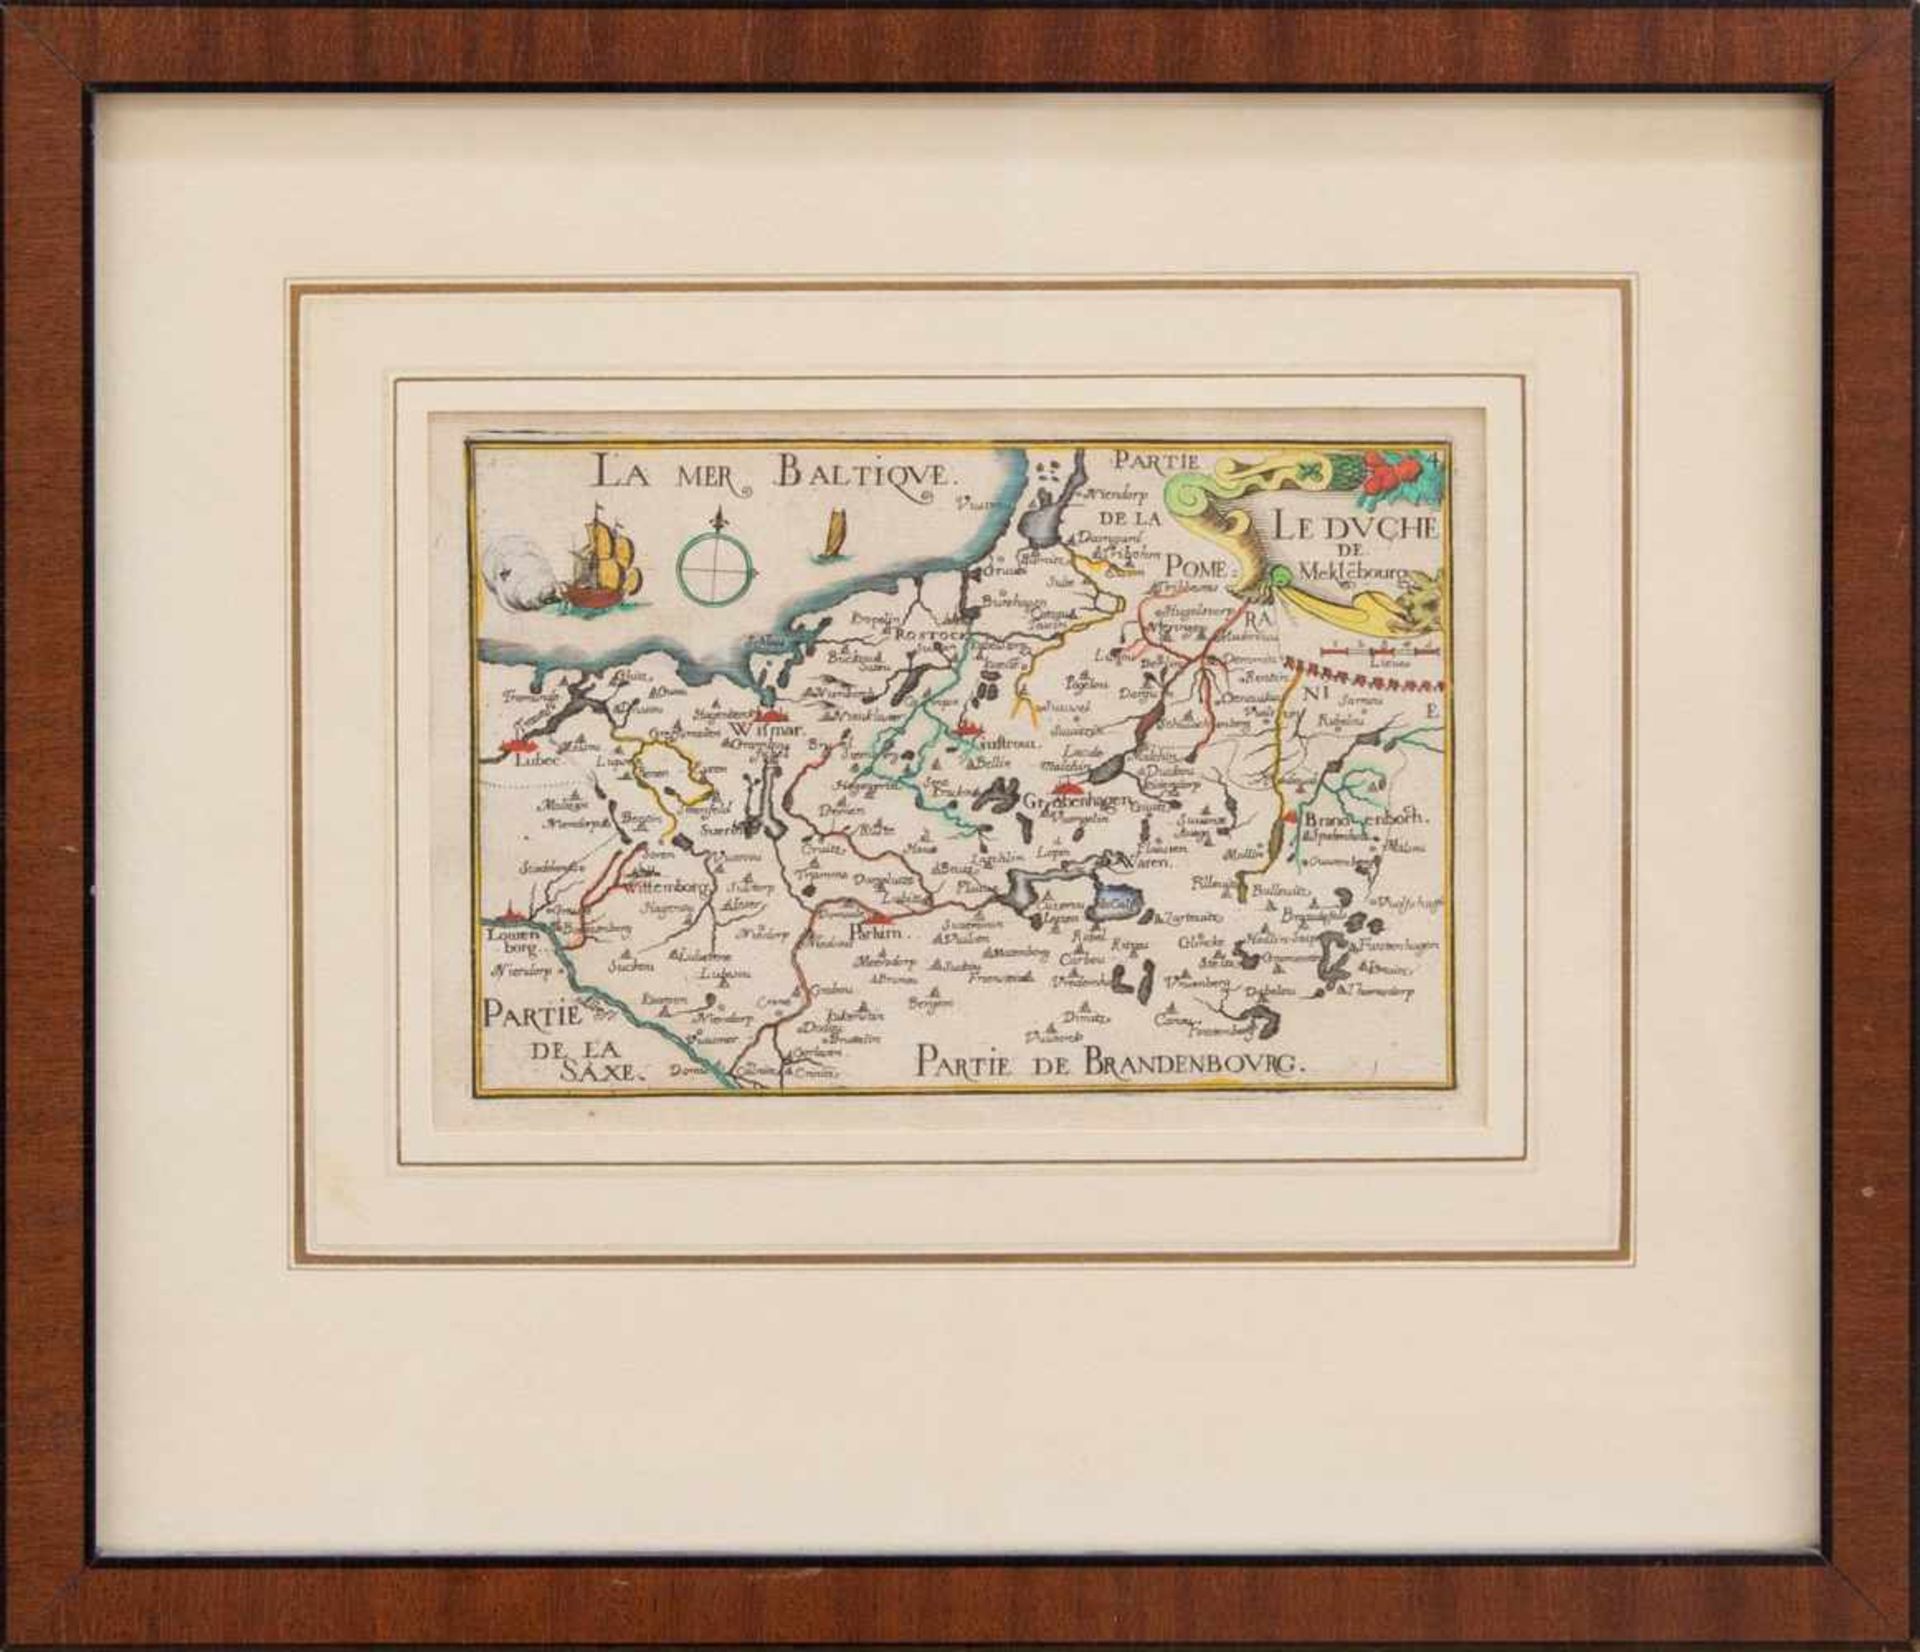 Landkarte„Le Duche de Meklebourg“, handcolorierter Kupferstich um 1650, 10,5 x 15,5 cm, gerahmt